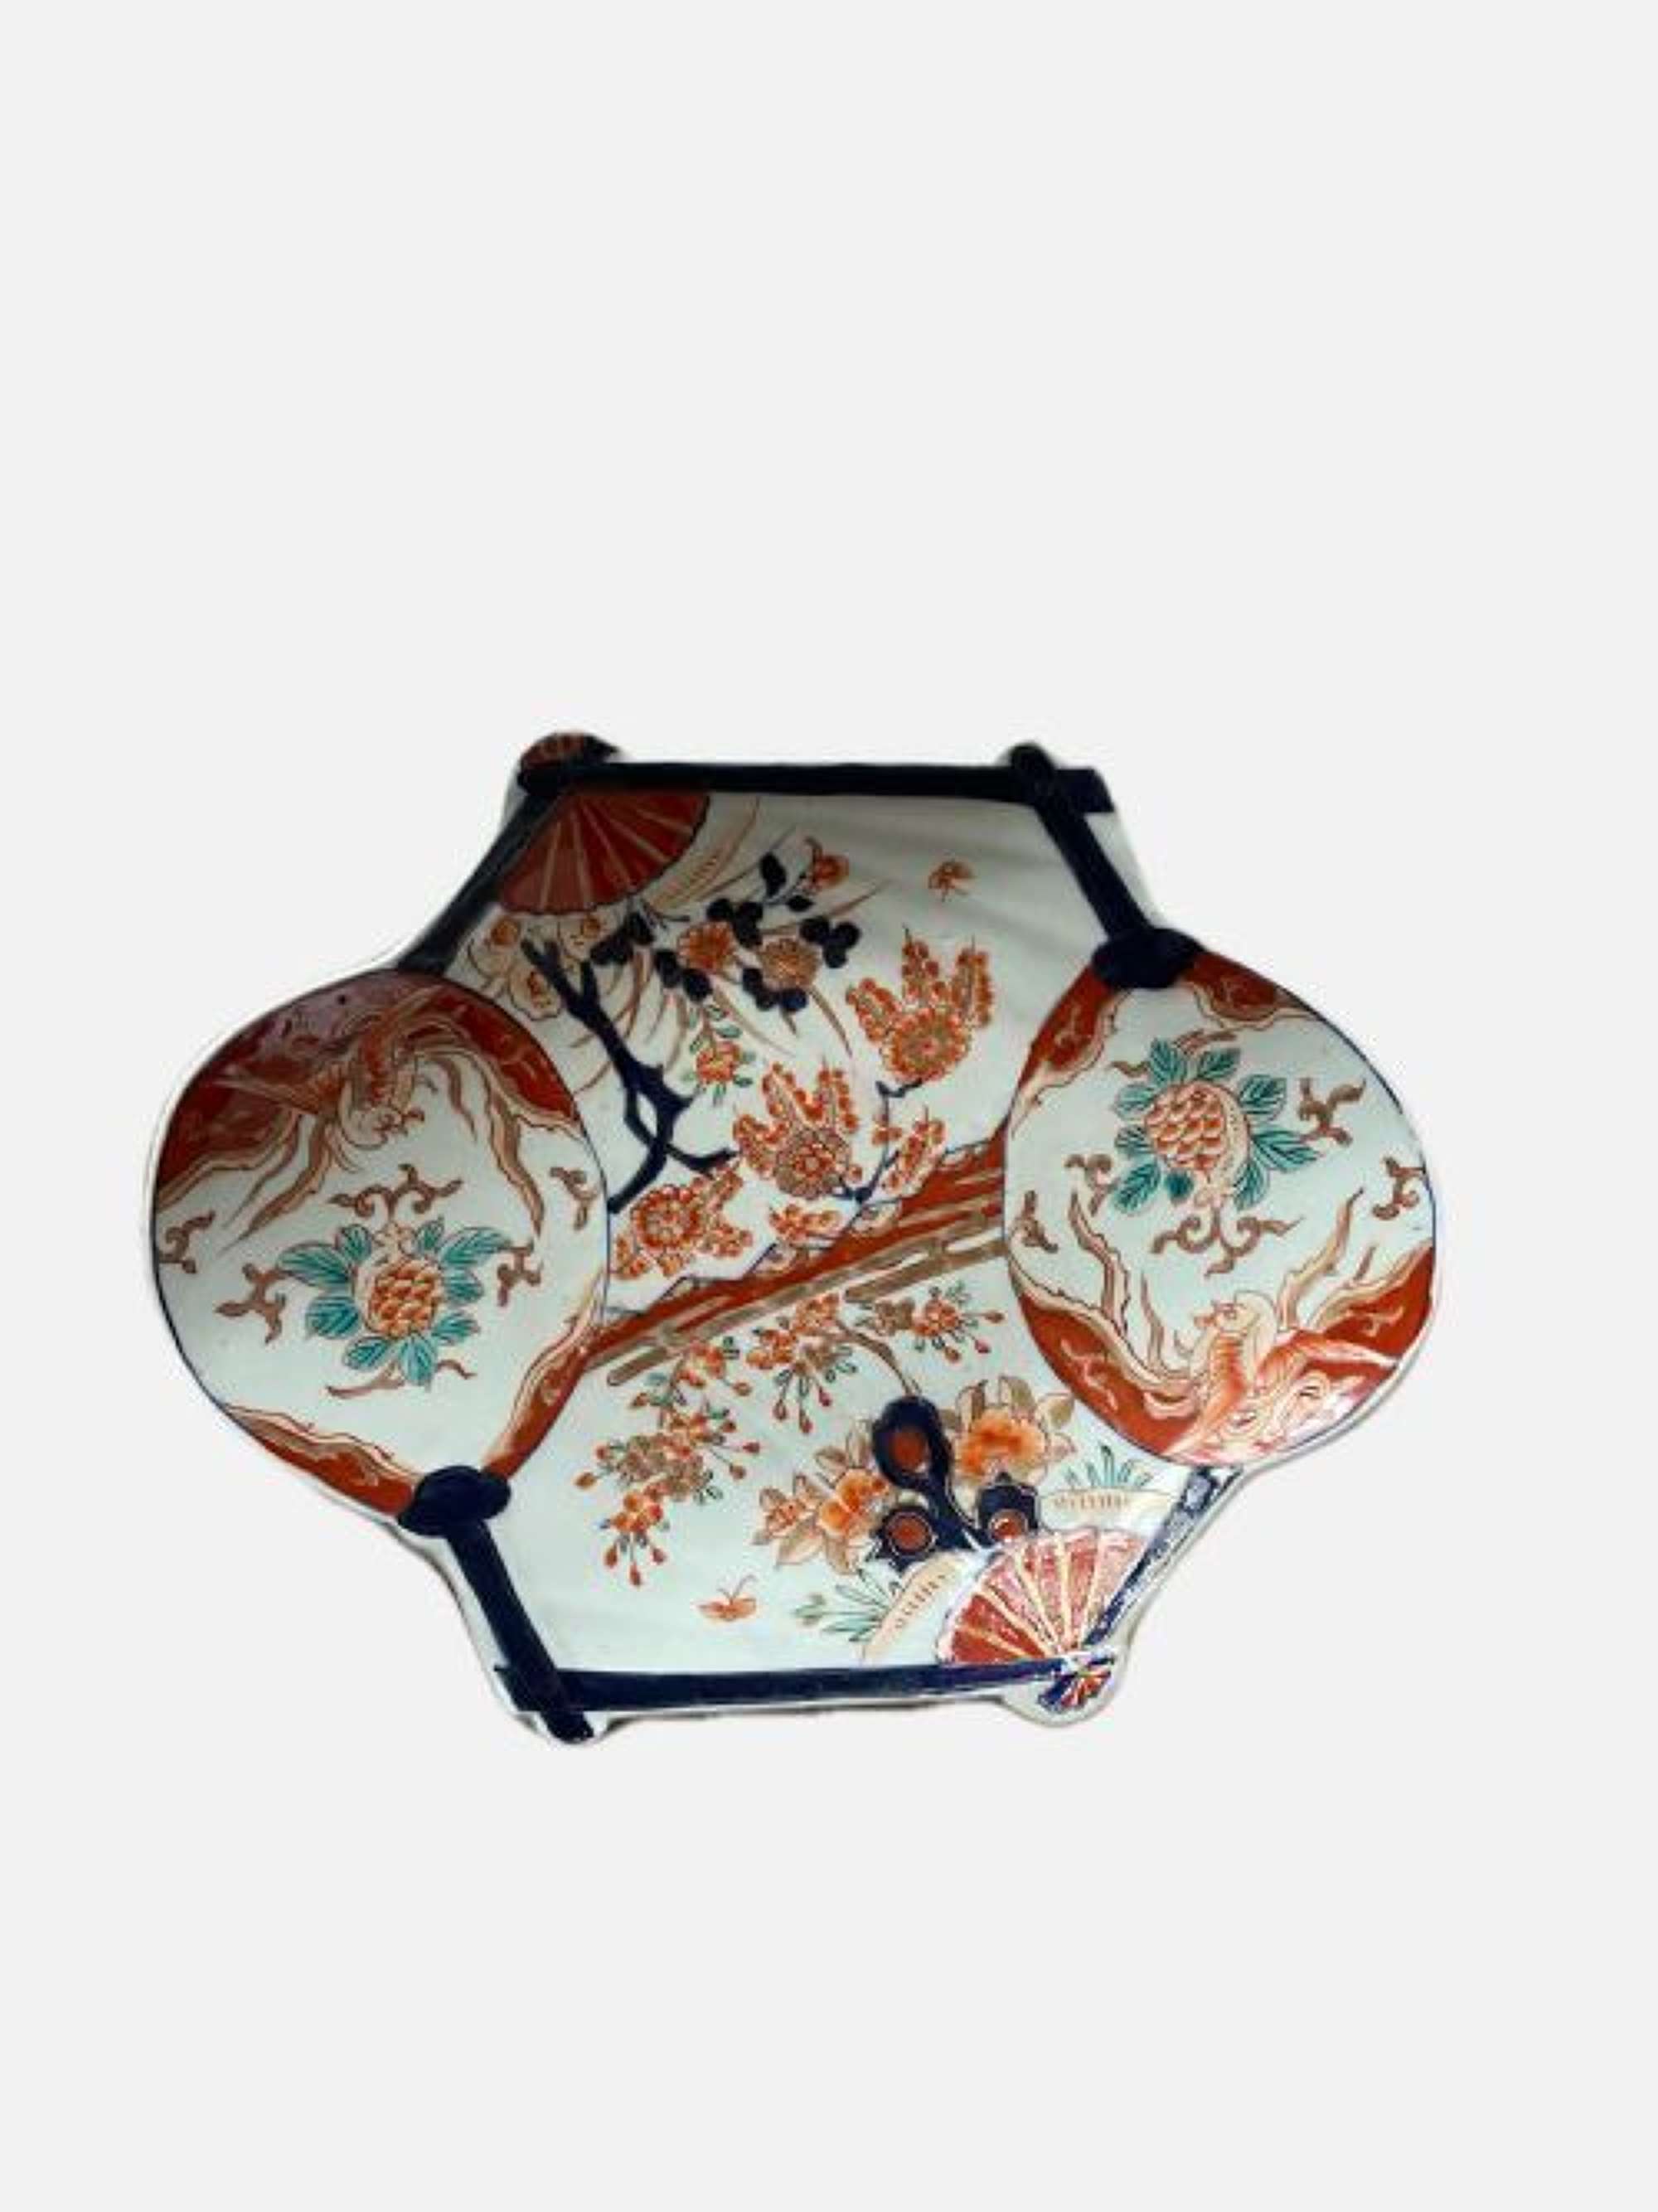 Unusual Antique Japanese Quality Imari Plate